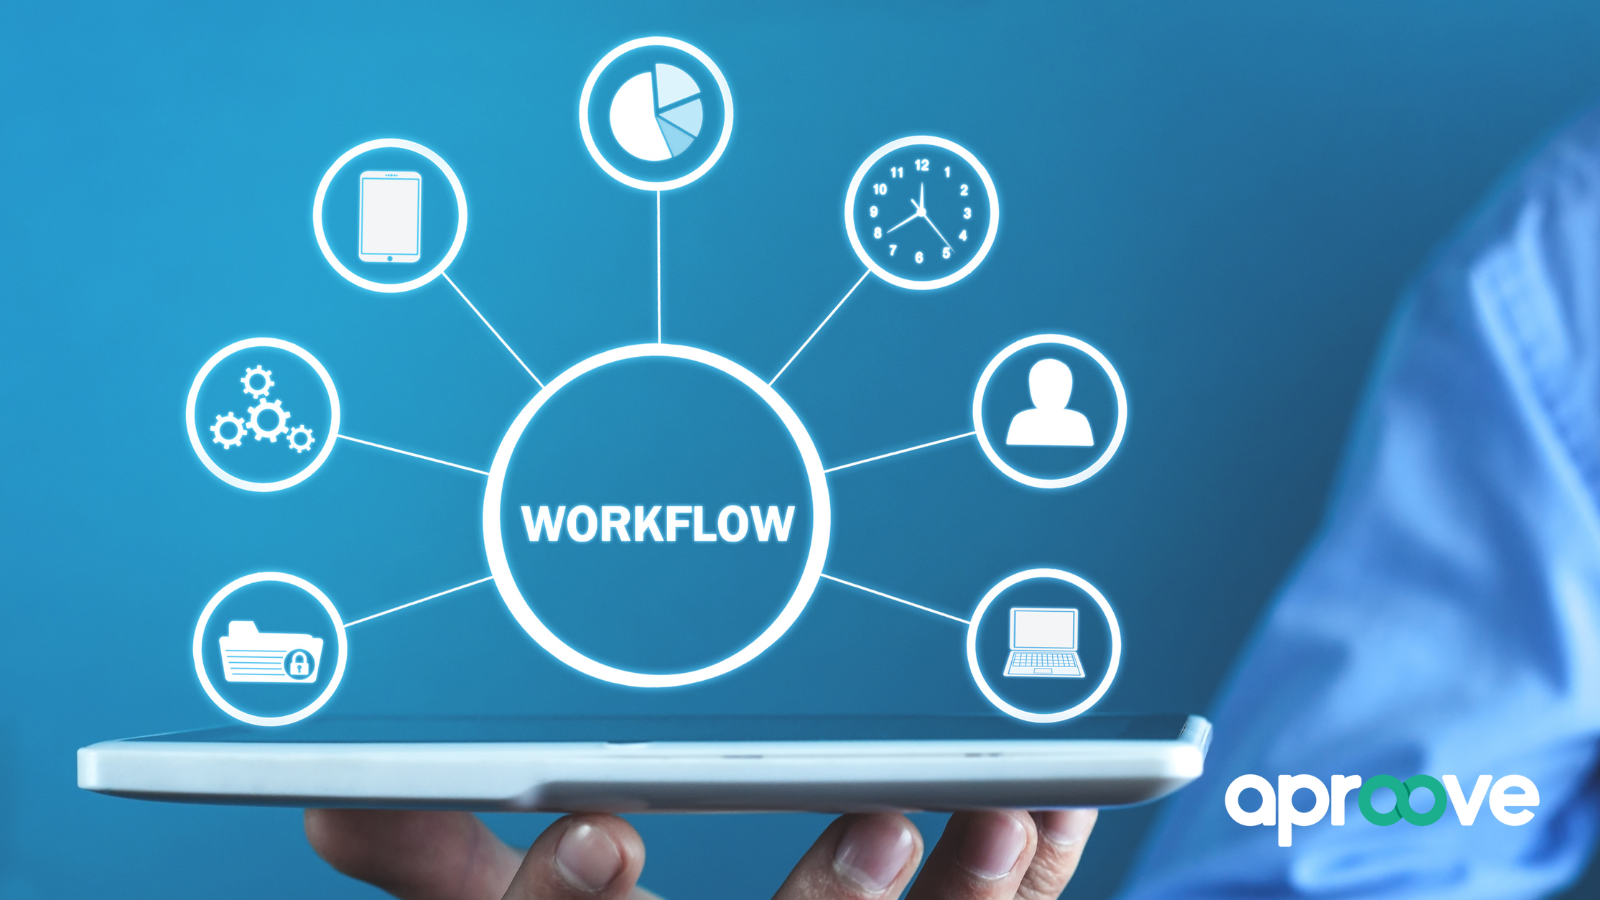 Workflow Management Software simplifies workflows